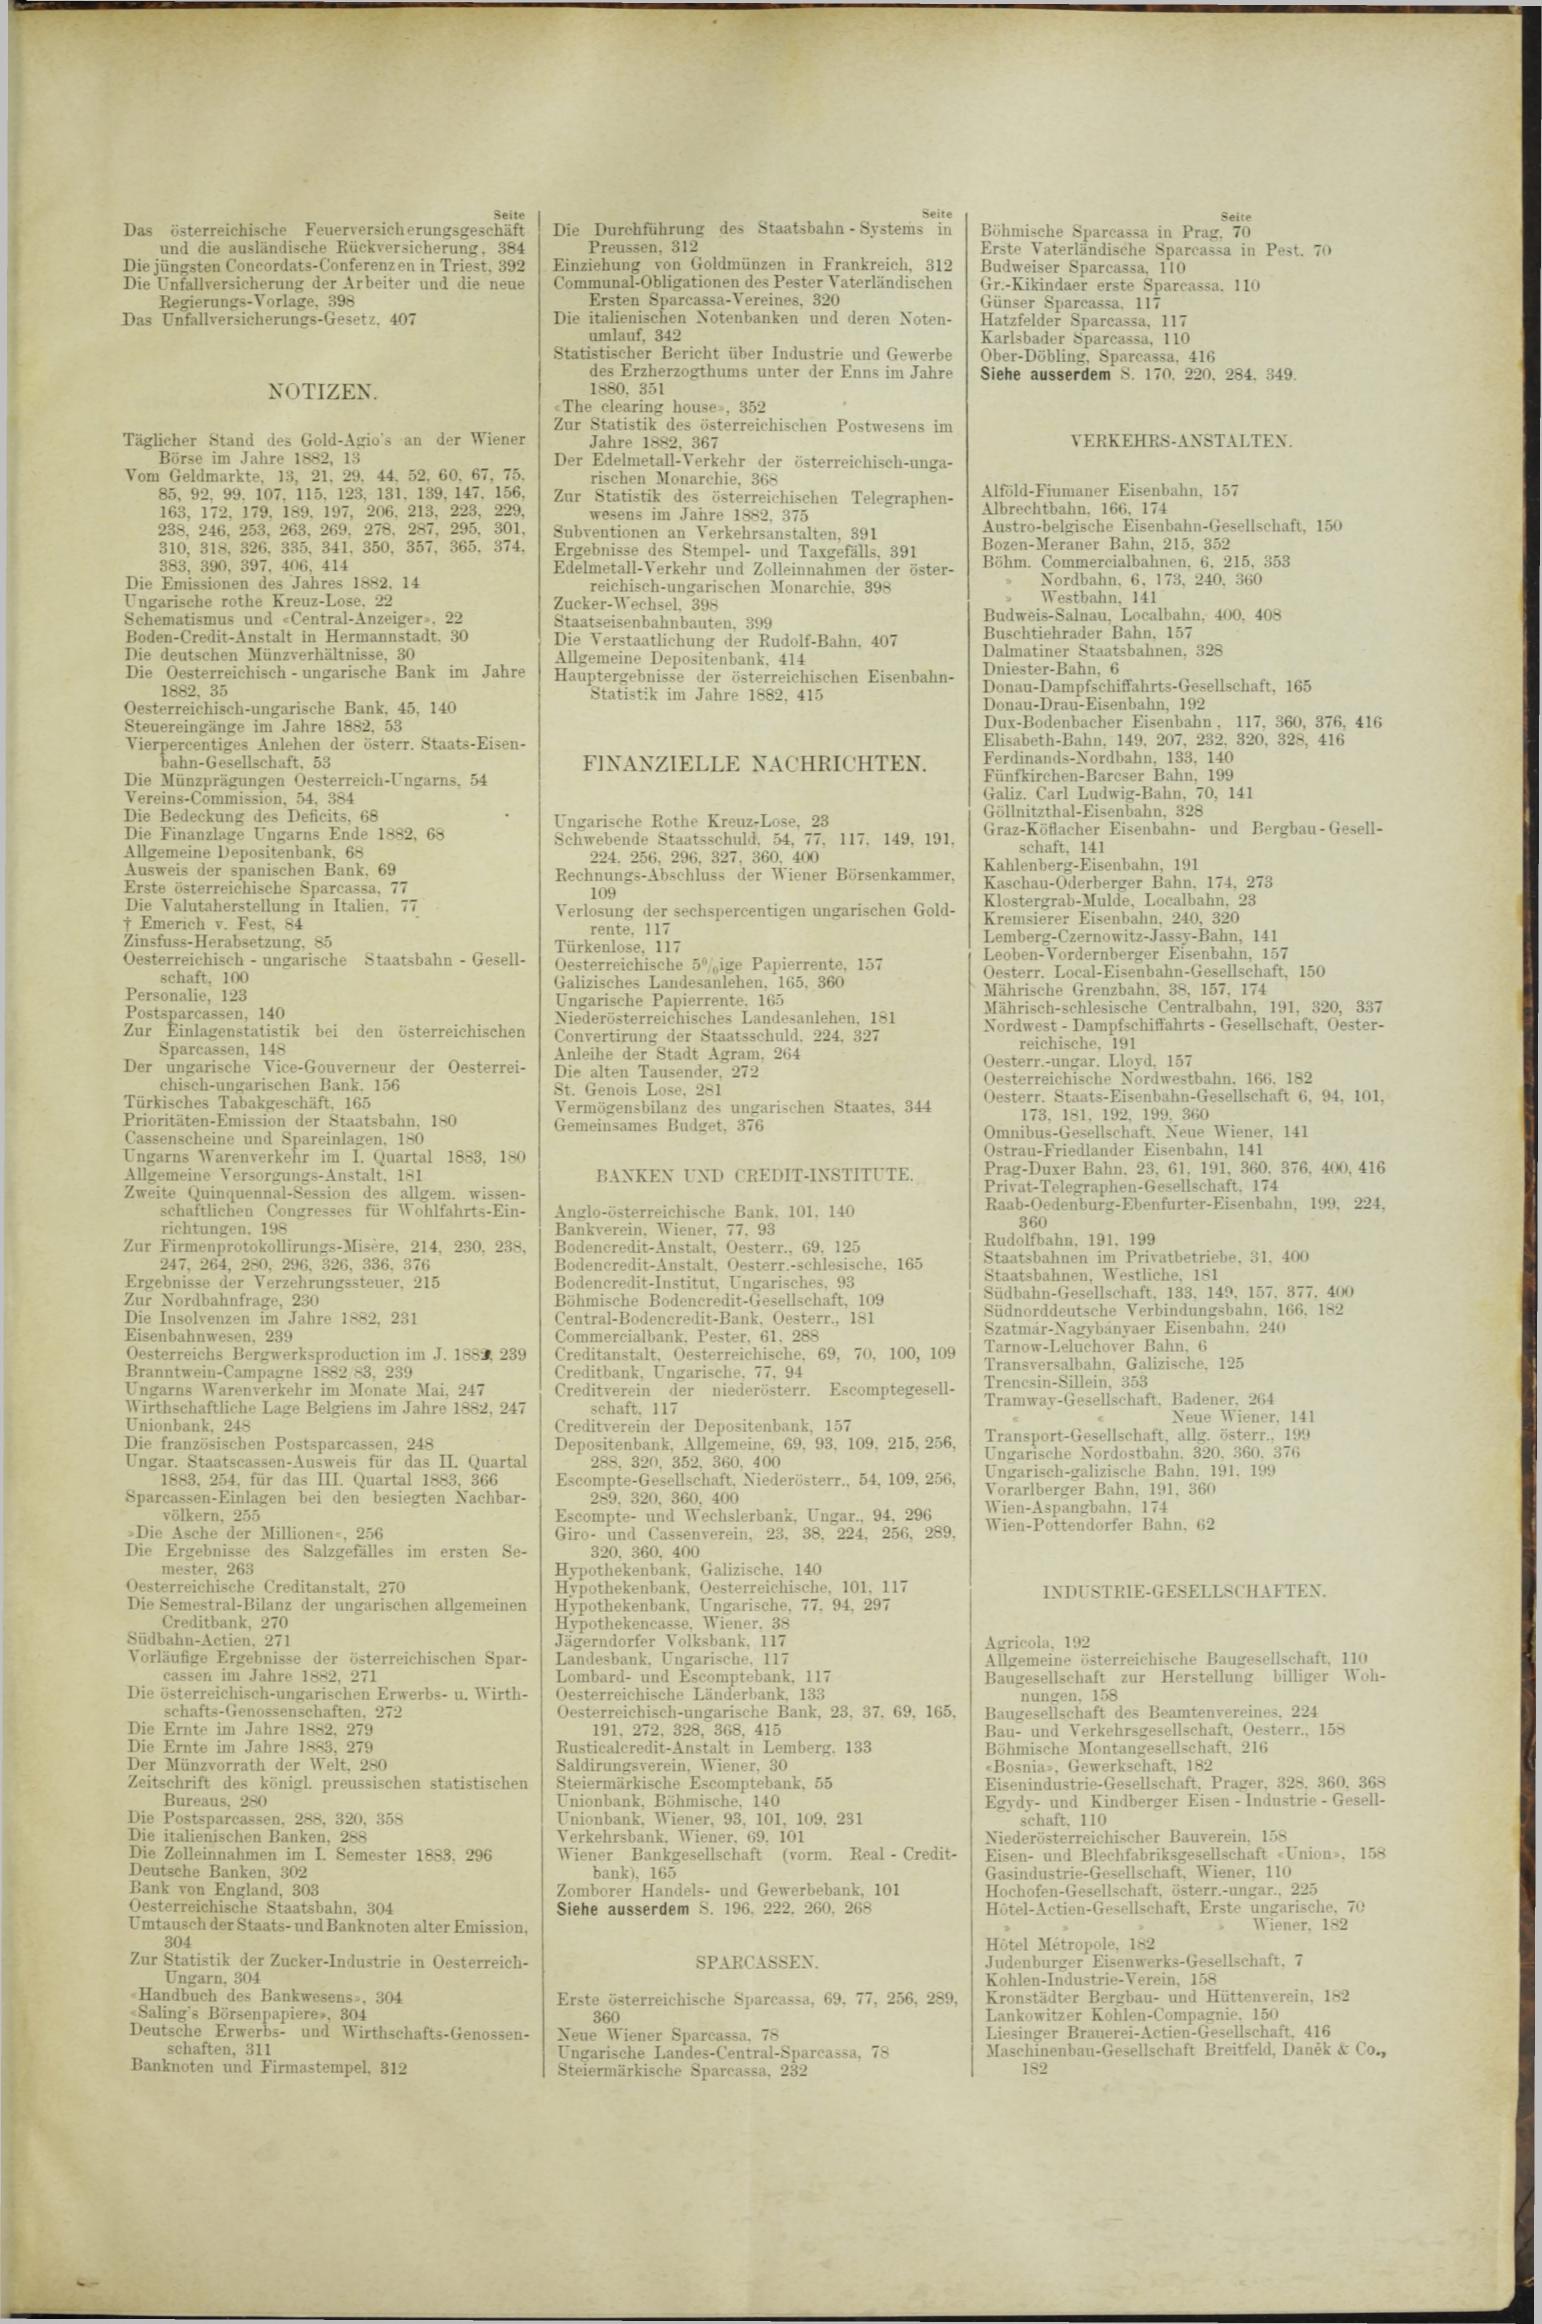 Der Tresor 08.03.1883 - Seite 11